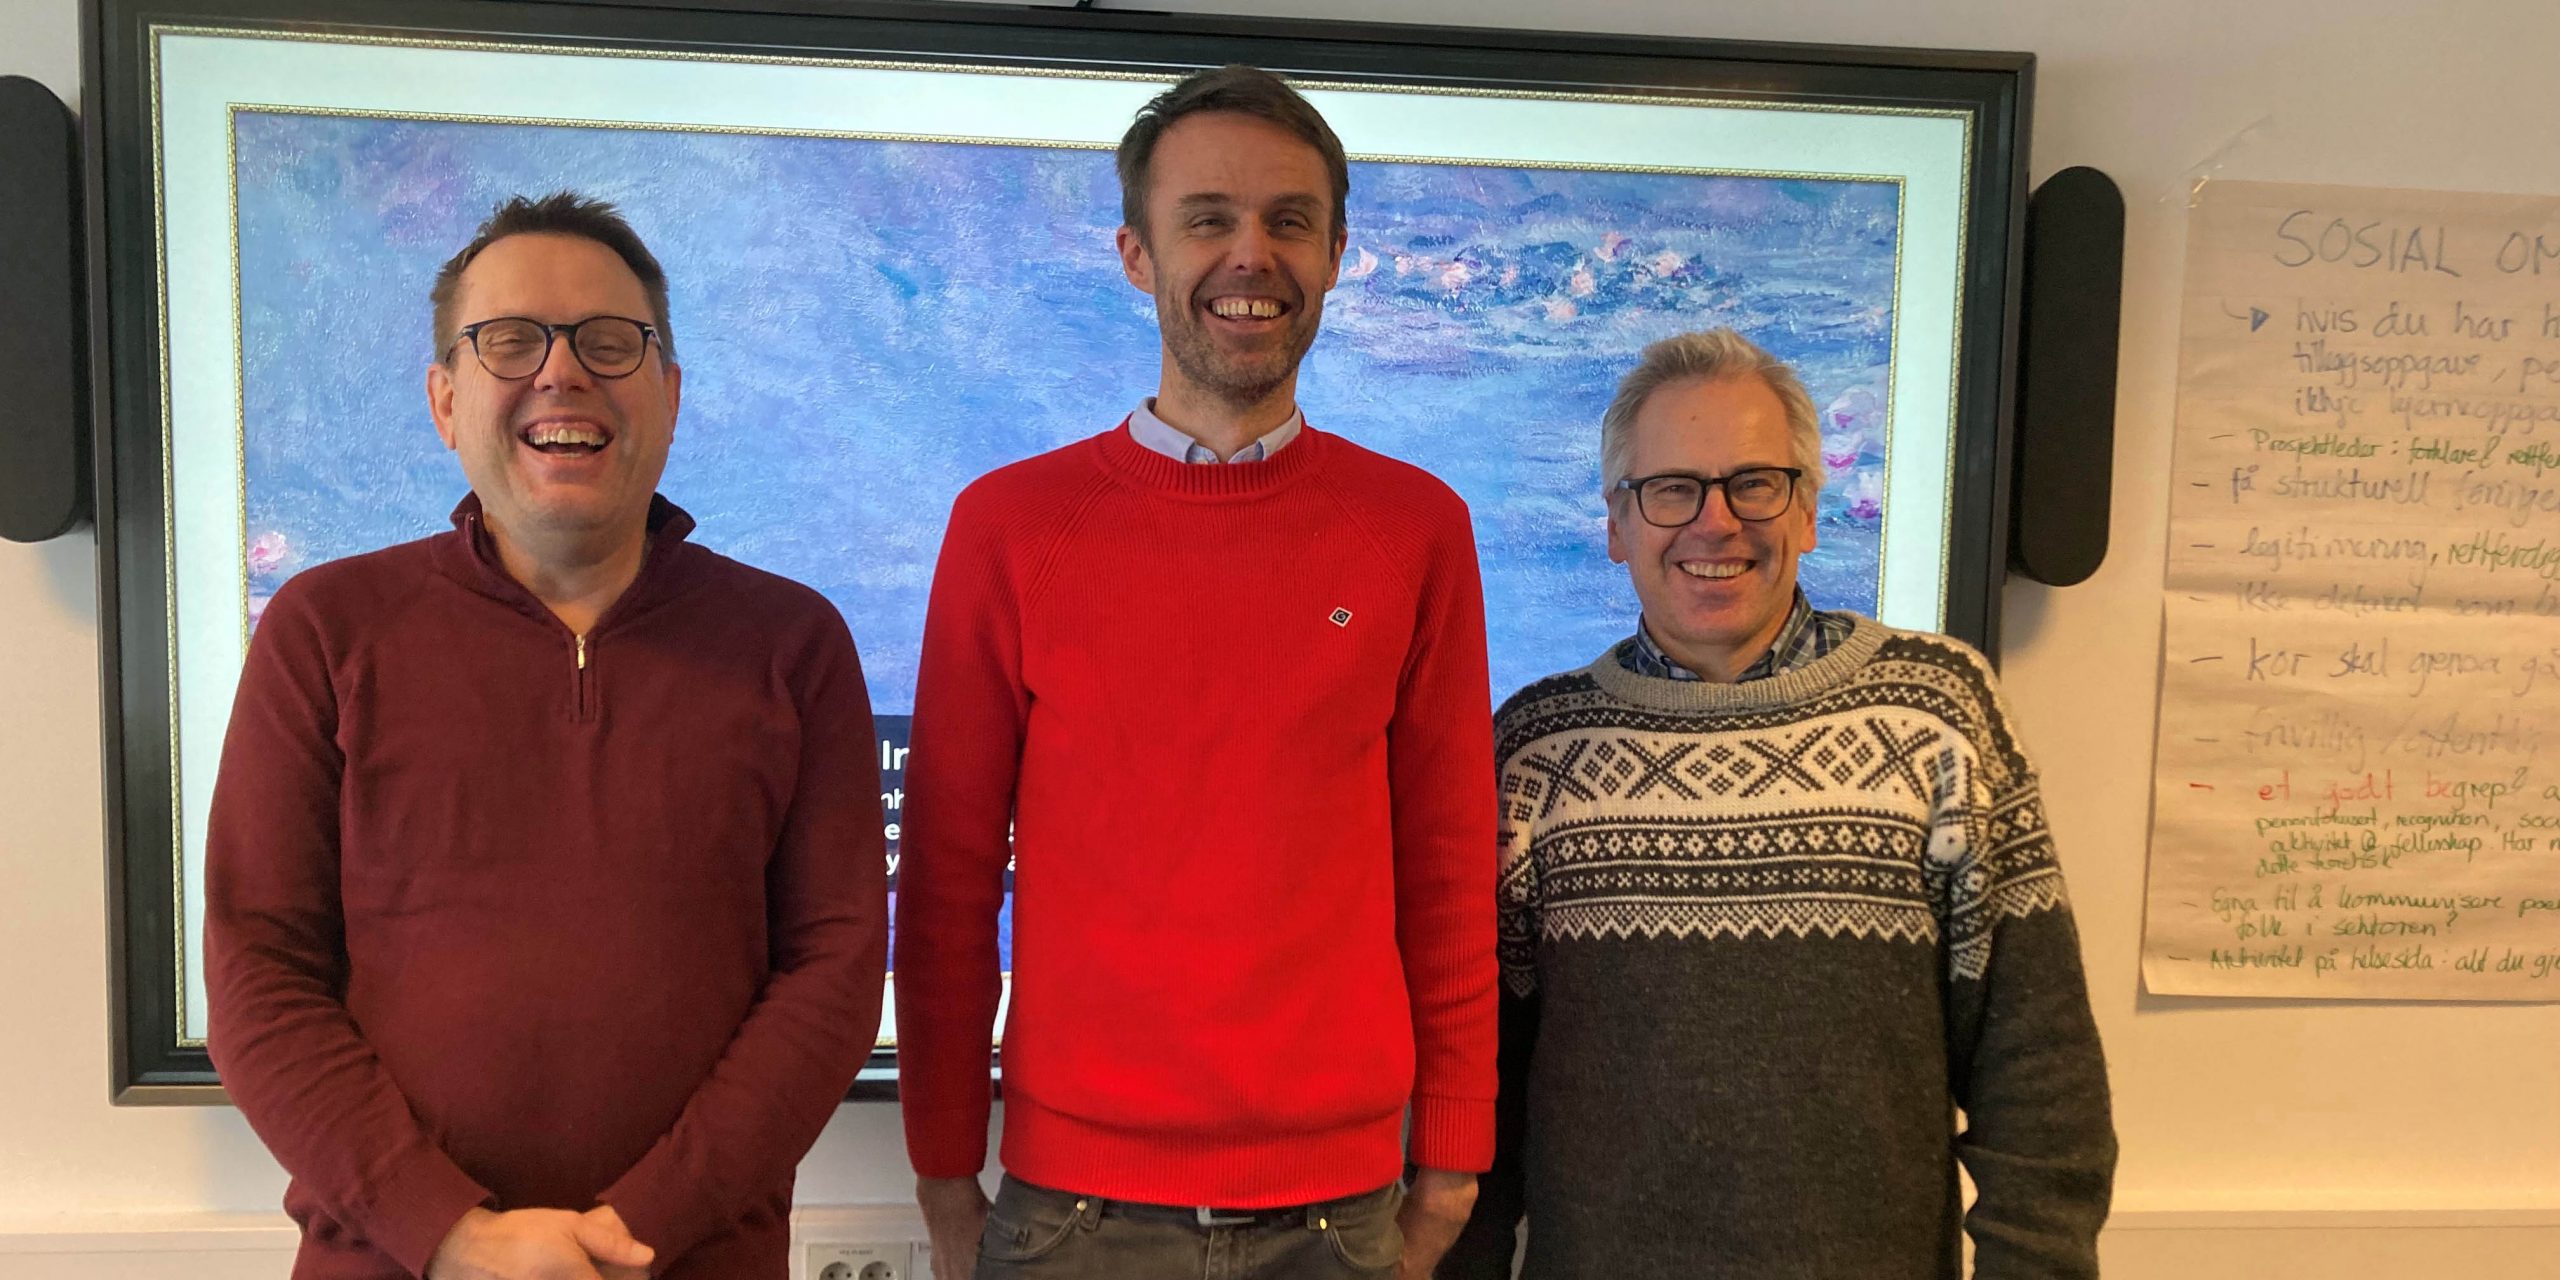 Asgeir Solstad (Nord Universitet), Jardar Sørvoll (BOVEL-leder) og Trond Bliksvær (Nordlandsforskning).